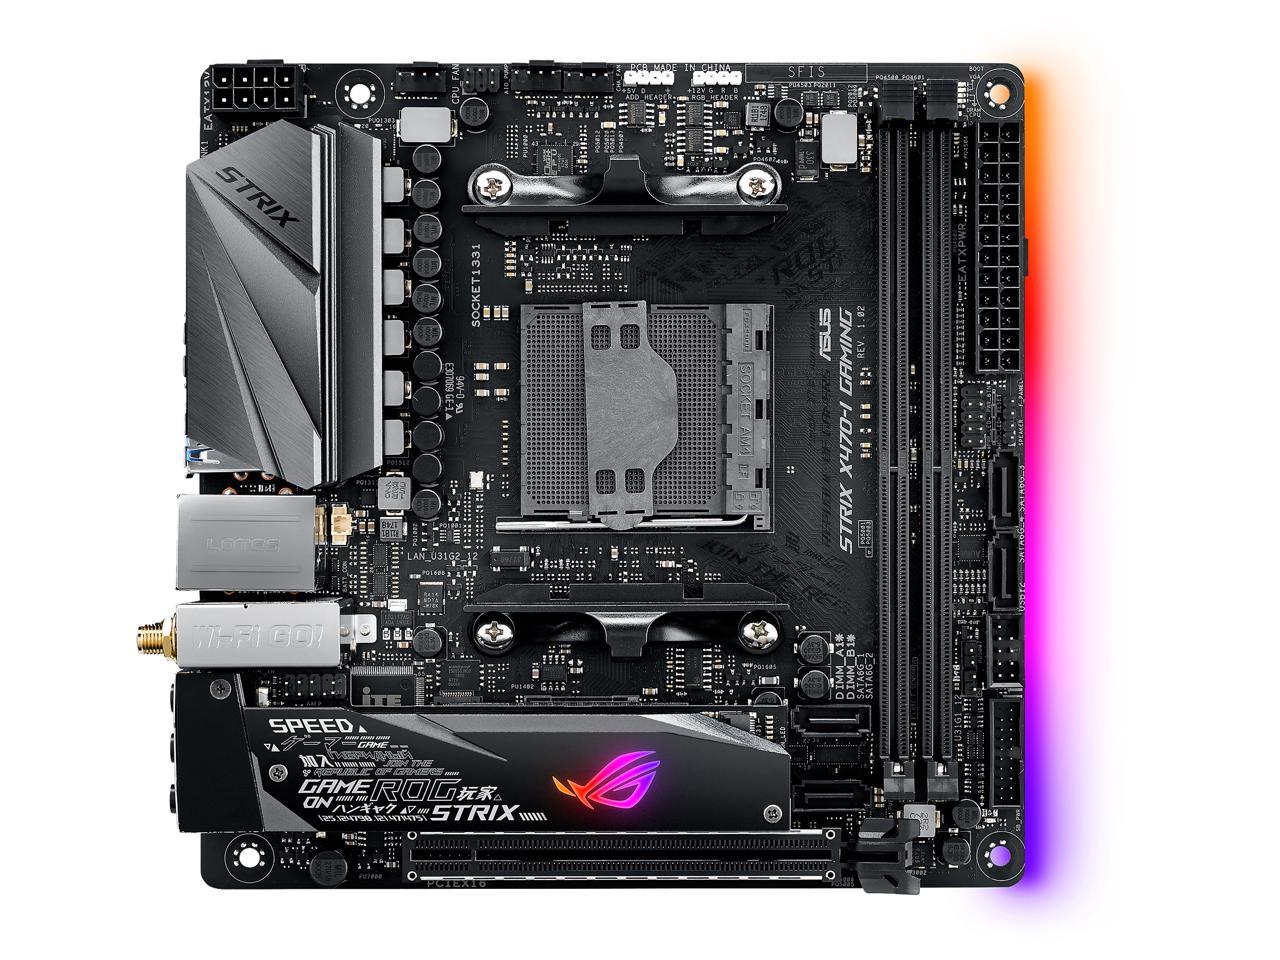 ASUS ROG Strix X470-I Gaming AM4 AMD X470 SATA 6Gb/s USB 3.1 HDMI Mini ITX AMD Motherboard